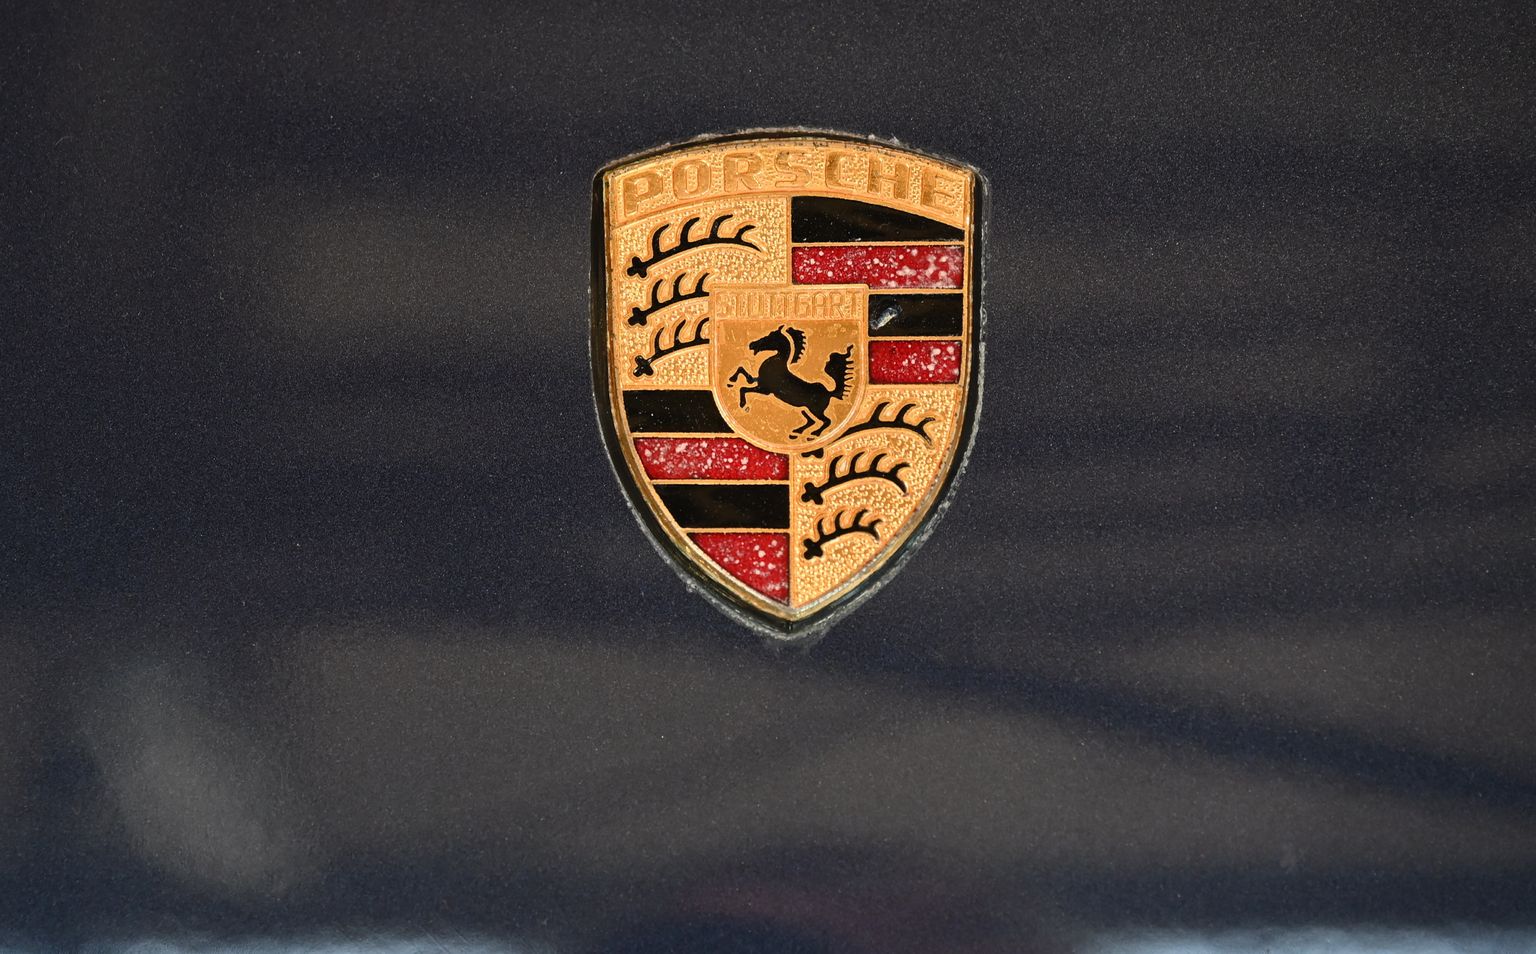 "Porsche" logo